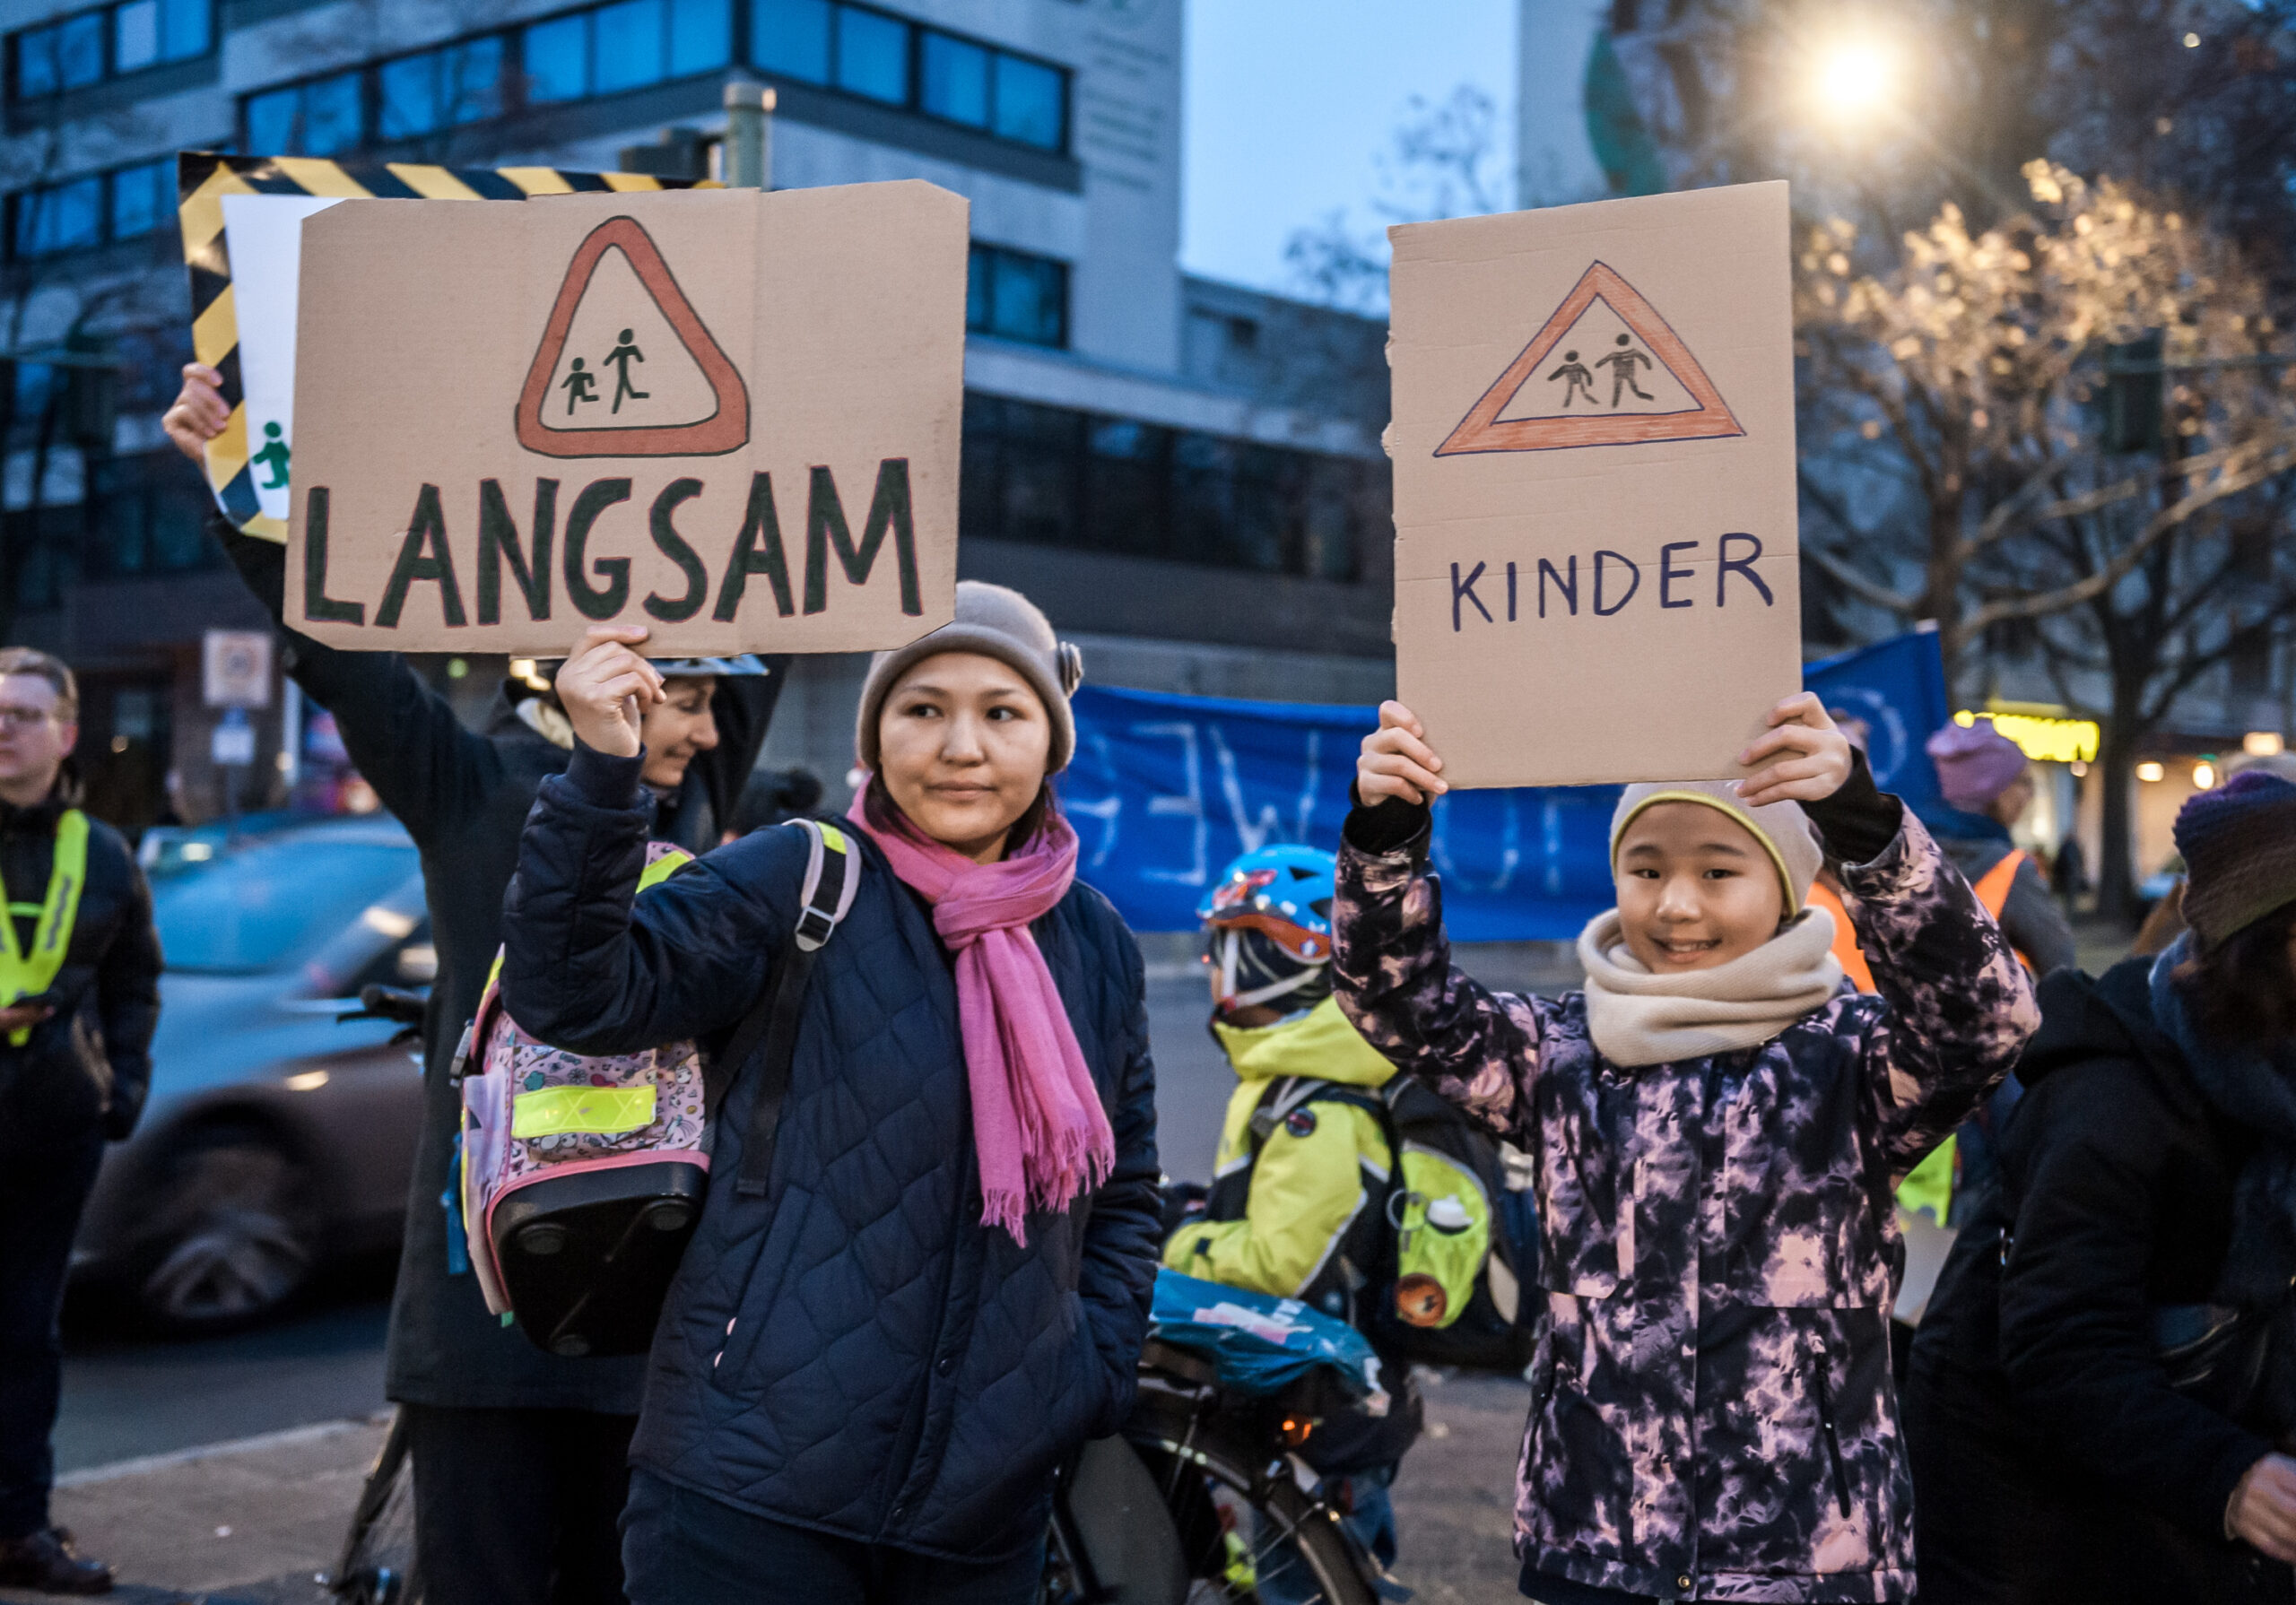 Mutter und Kind demonstrieren für Schulwegsicherheit mit Pappschildern: Langsam, Kinder